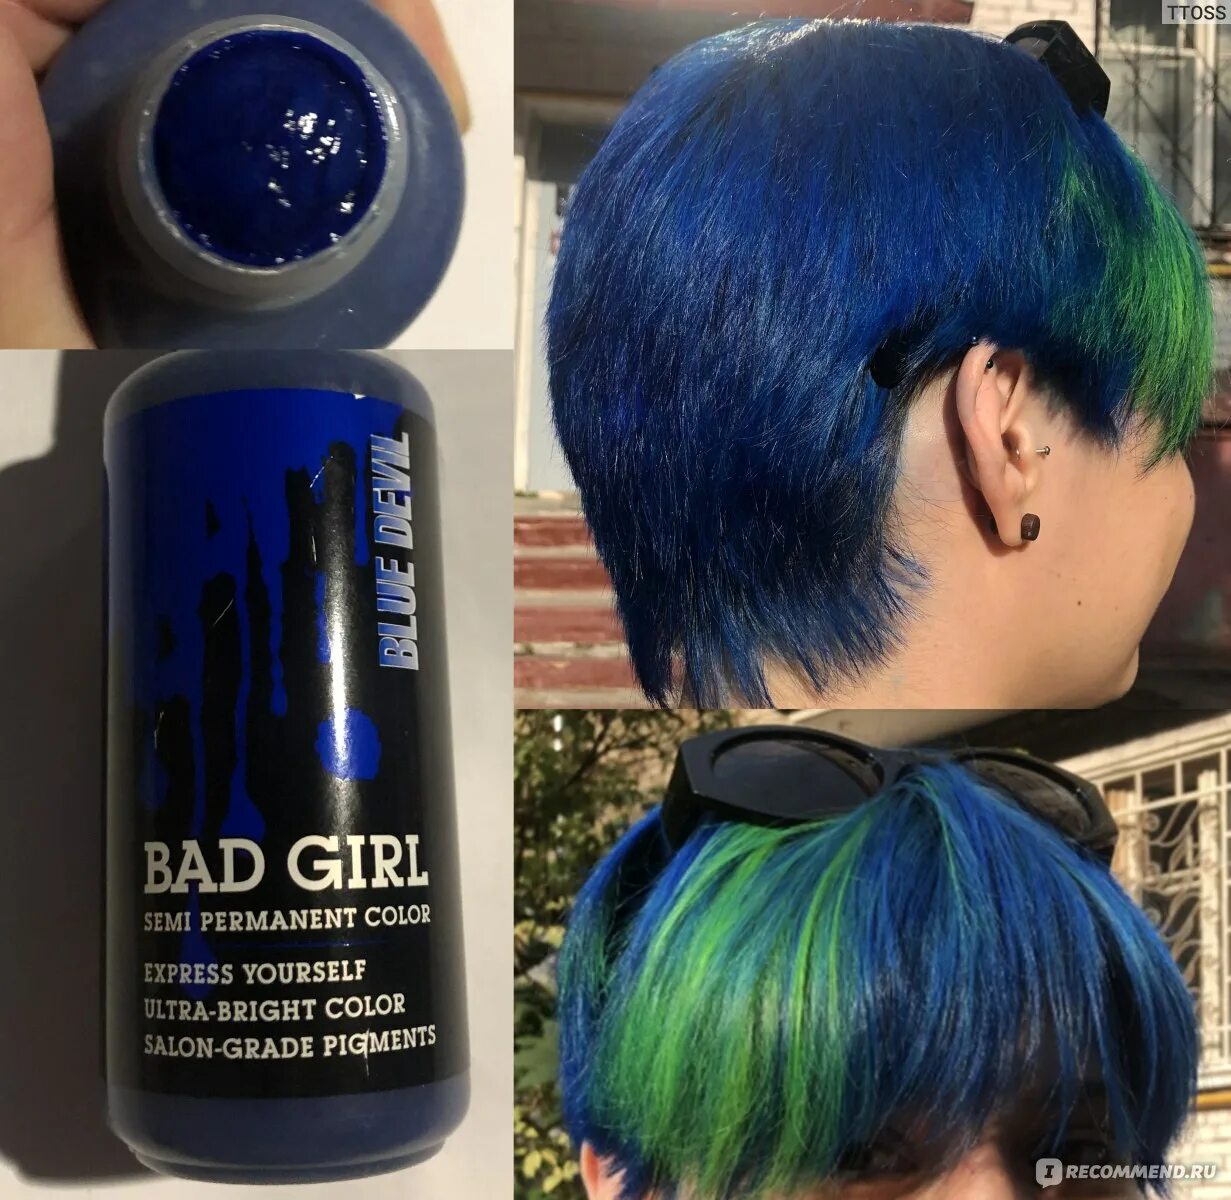 Как смыть пигмент прямого действия. Краска Bad girl Blue Devil. Bad girl краска для волос синяя. Краска бед герл для волос синий. Краска бэд герл на волосах синяя.